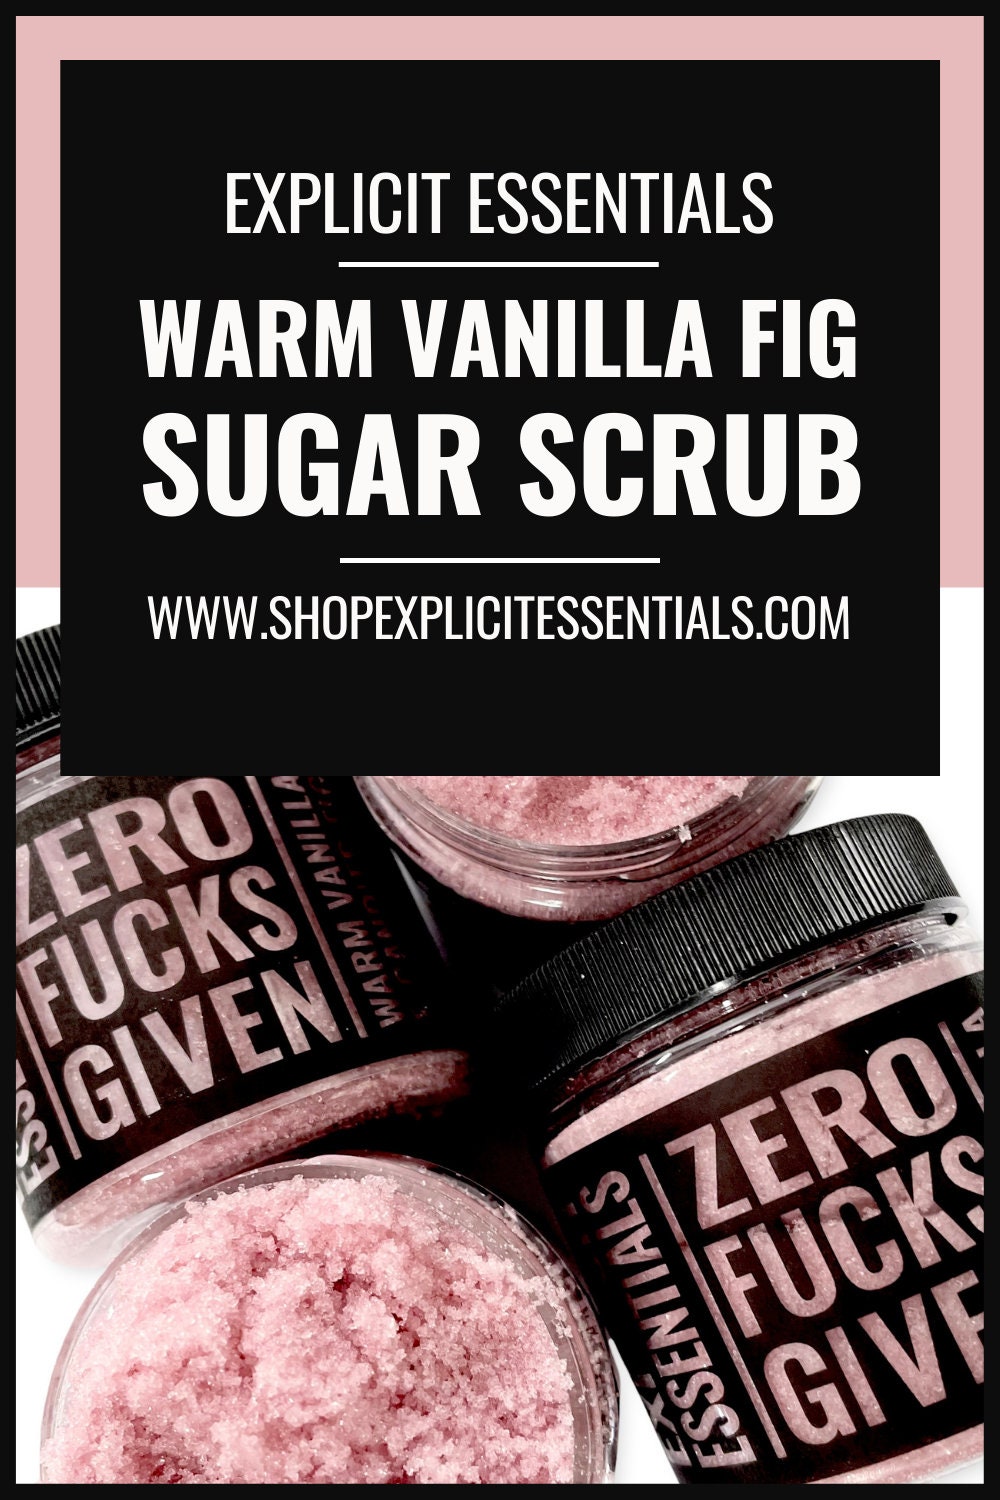 Zero Fucks Given Sugar Scrub